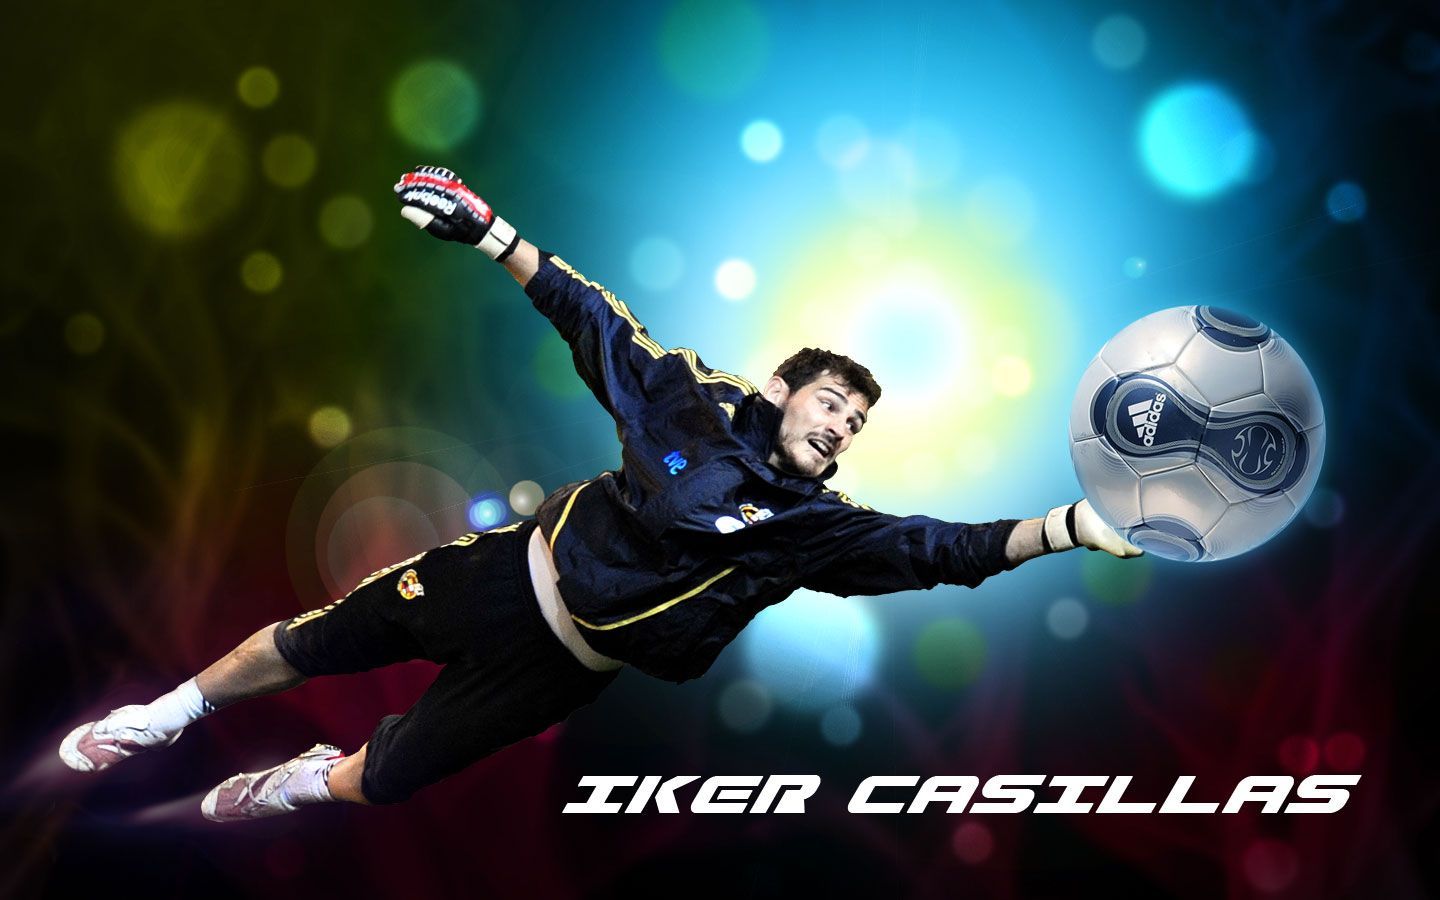 Casillas Iker HD Image Wallpaper